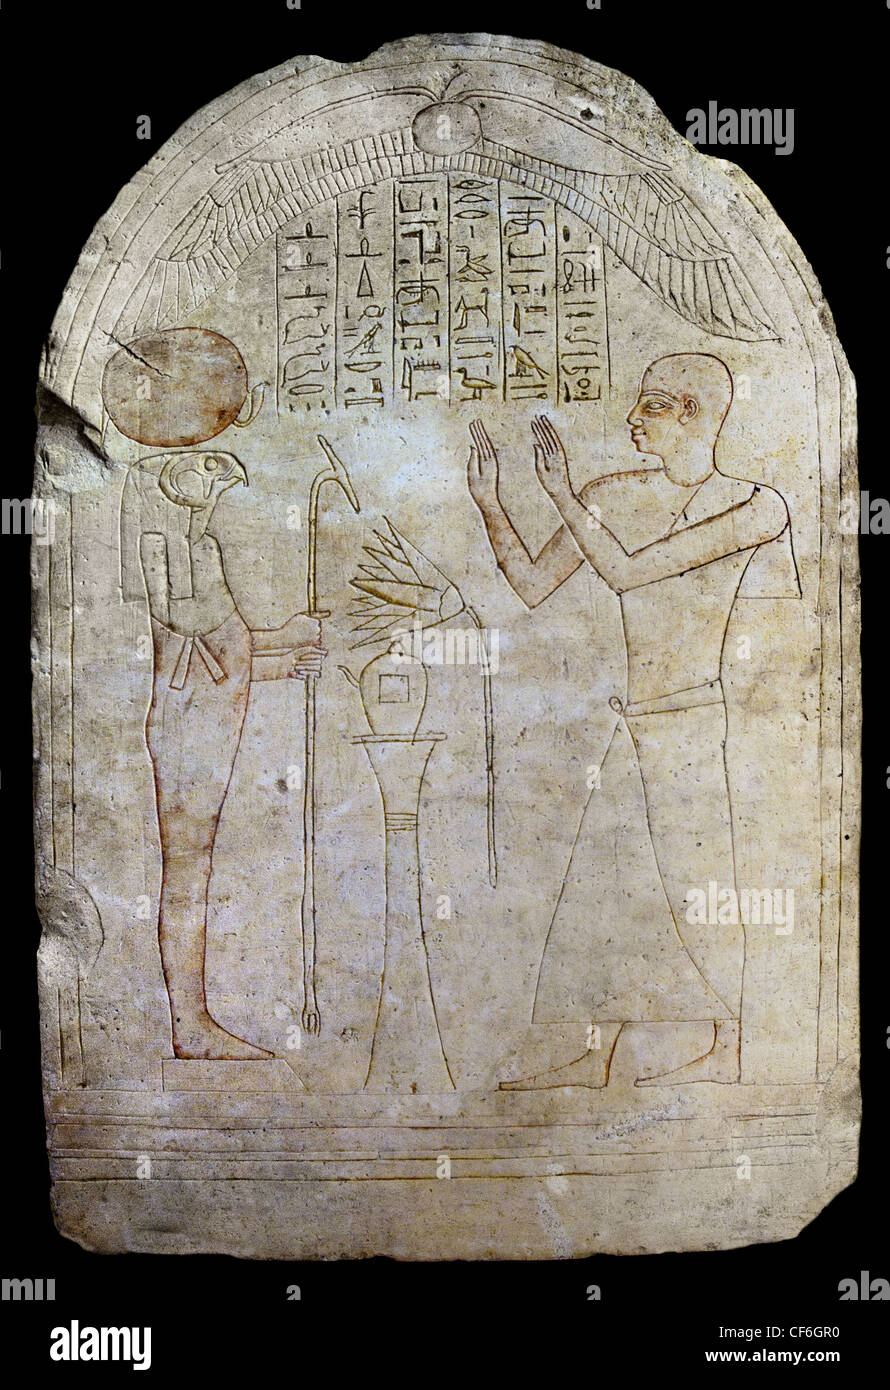 Cette stèle est Irtyrtcha prêtre d'Osiris et orfèvre d'Amon Ra aime Horakhti 25 - 26 BC 685-525 Dynastie Égypte hiéroglyphe égyptien Banque D'Images